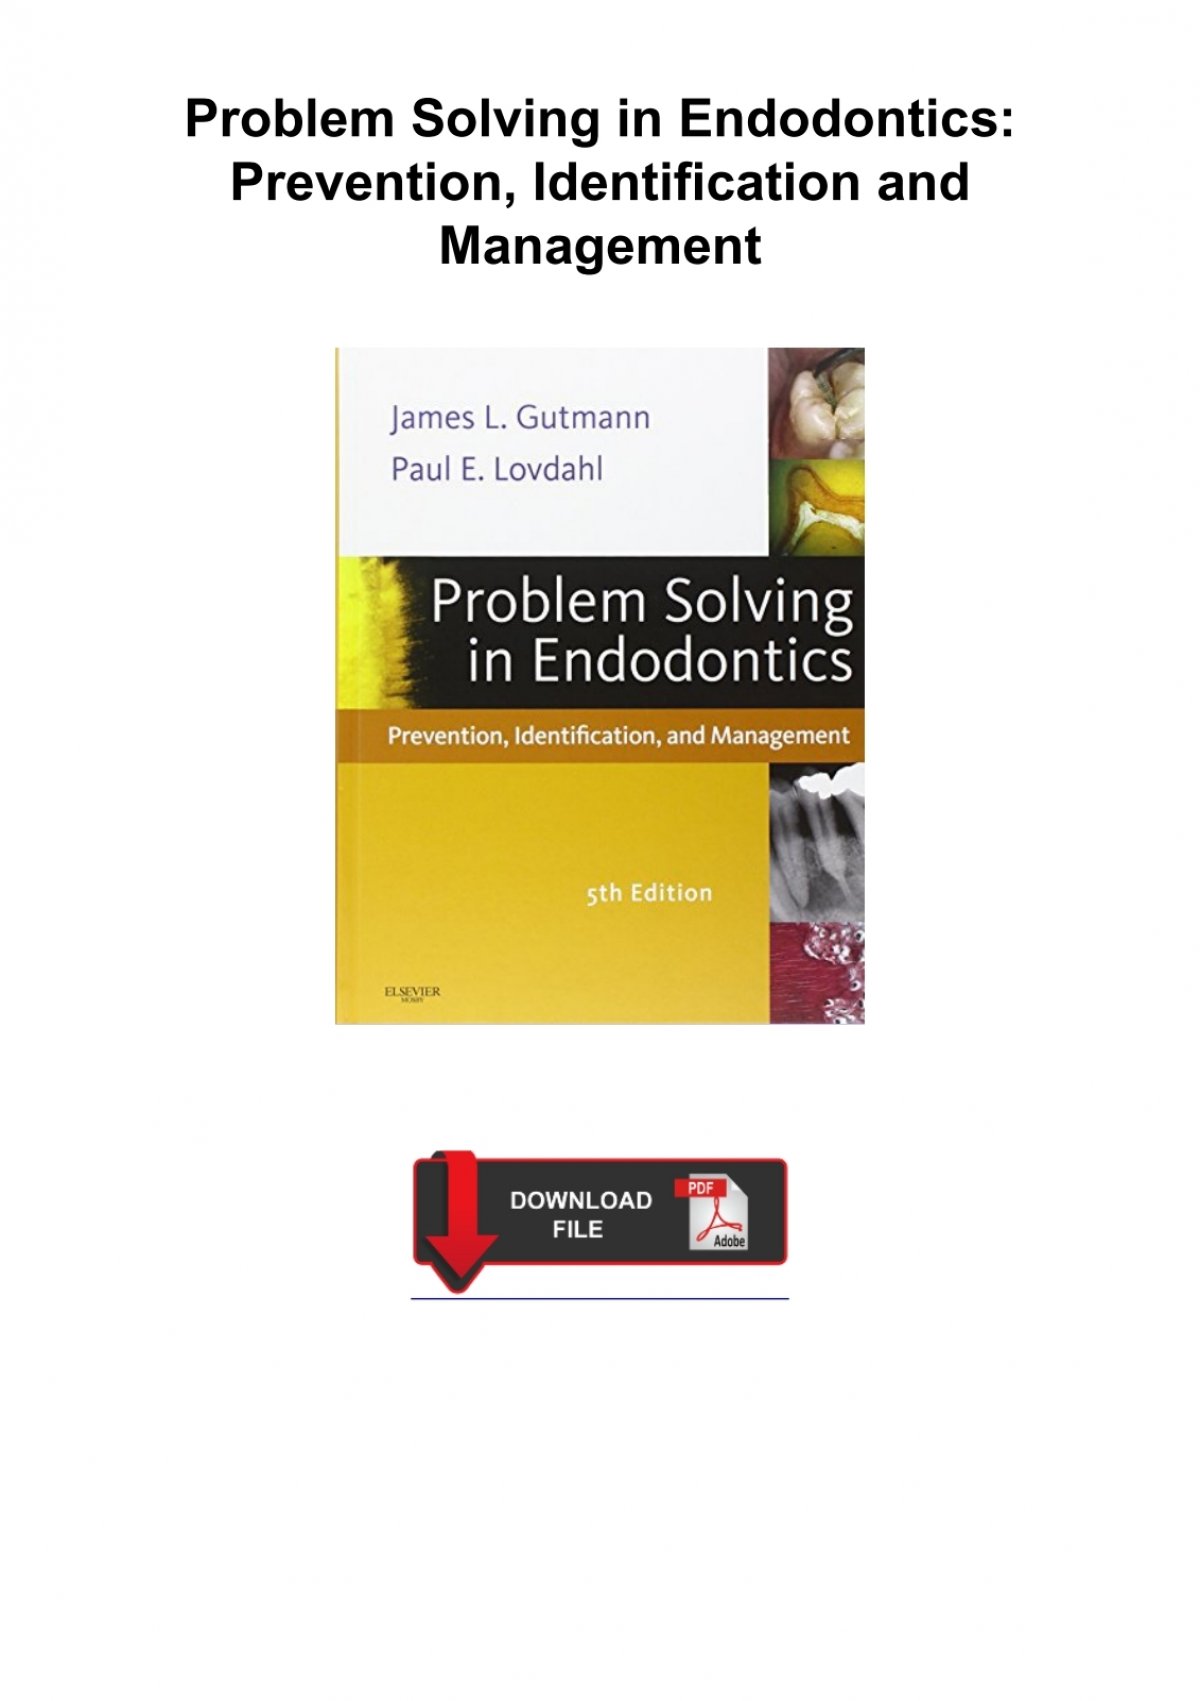 problem solving endodontics pdf